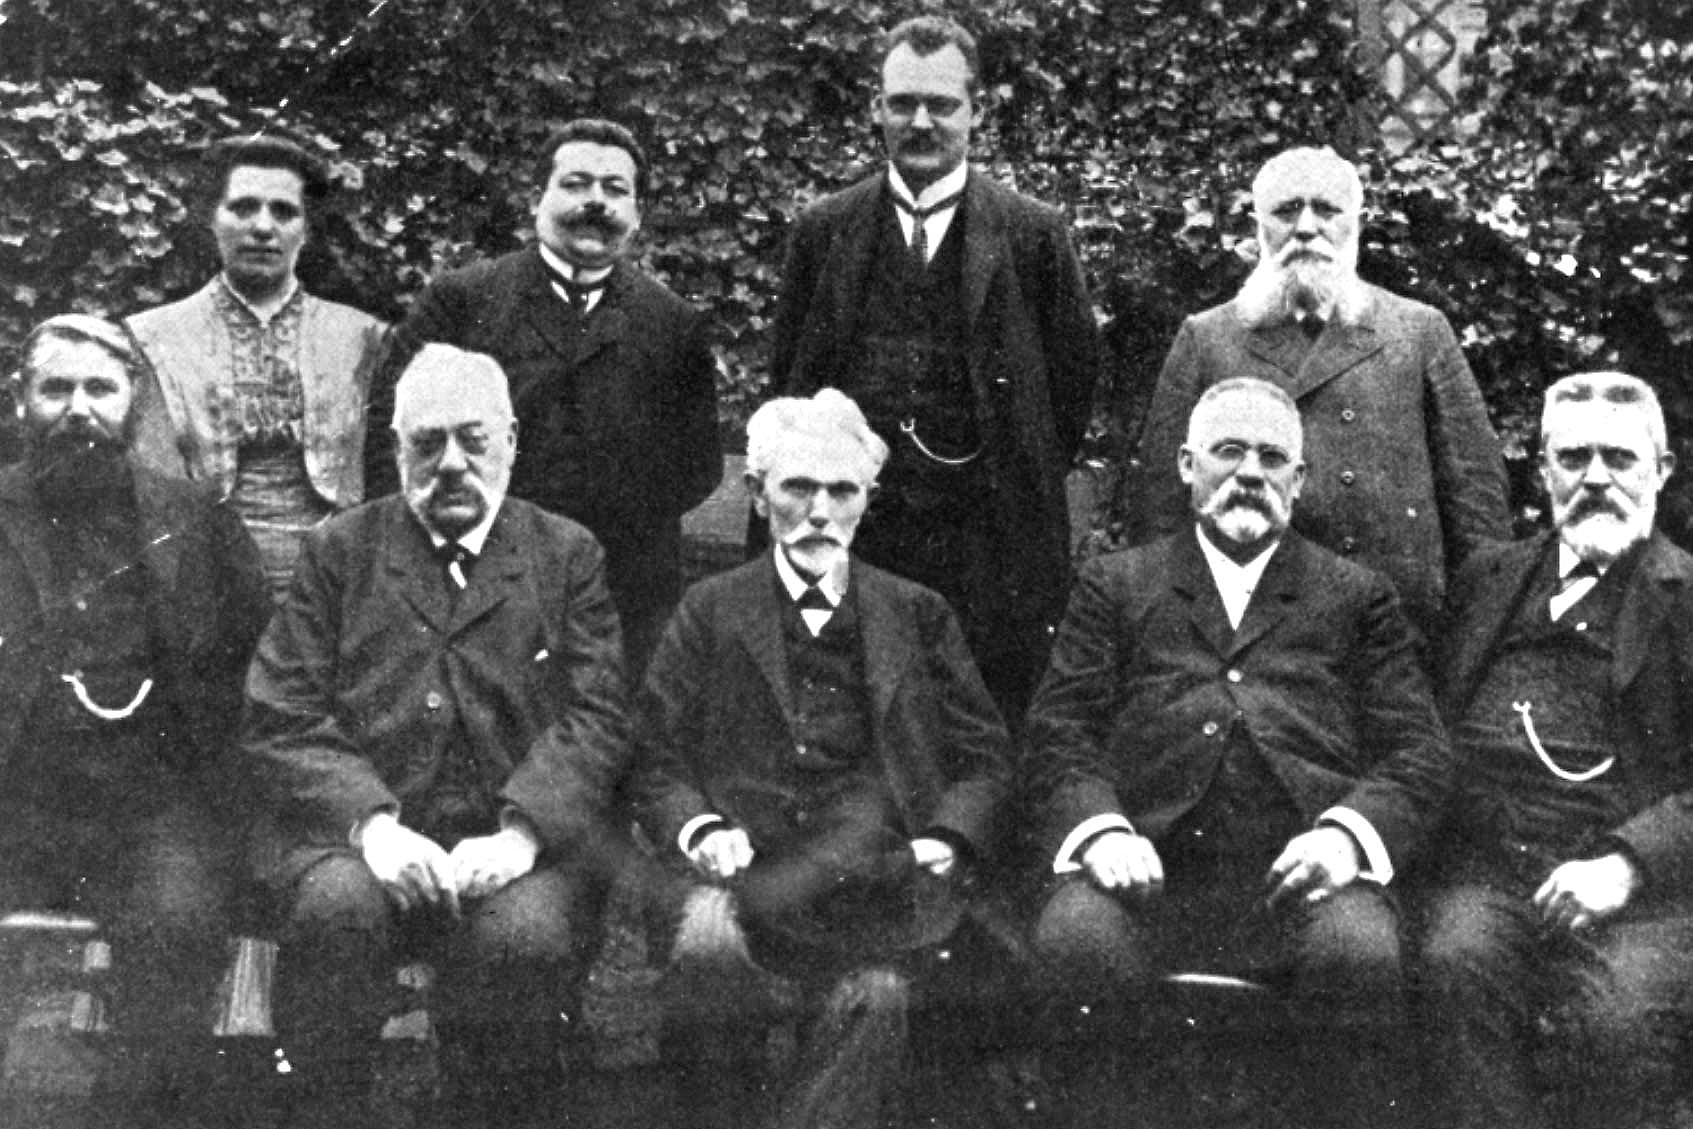 Der SPD-Parteivorstand 1909. V.l.: oben: Luise Zietz, Friedrich Ebert, Hermann Müller, Robert Wengels; unten: Karl Alwin Gerisch, Paul Singer, August Bebel, Wilhelm Pfannkuch, Hermann Molkenbuhr. 